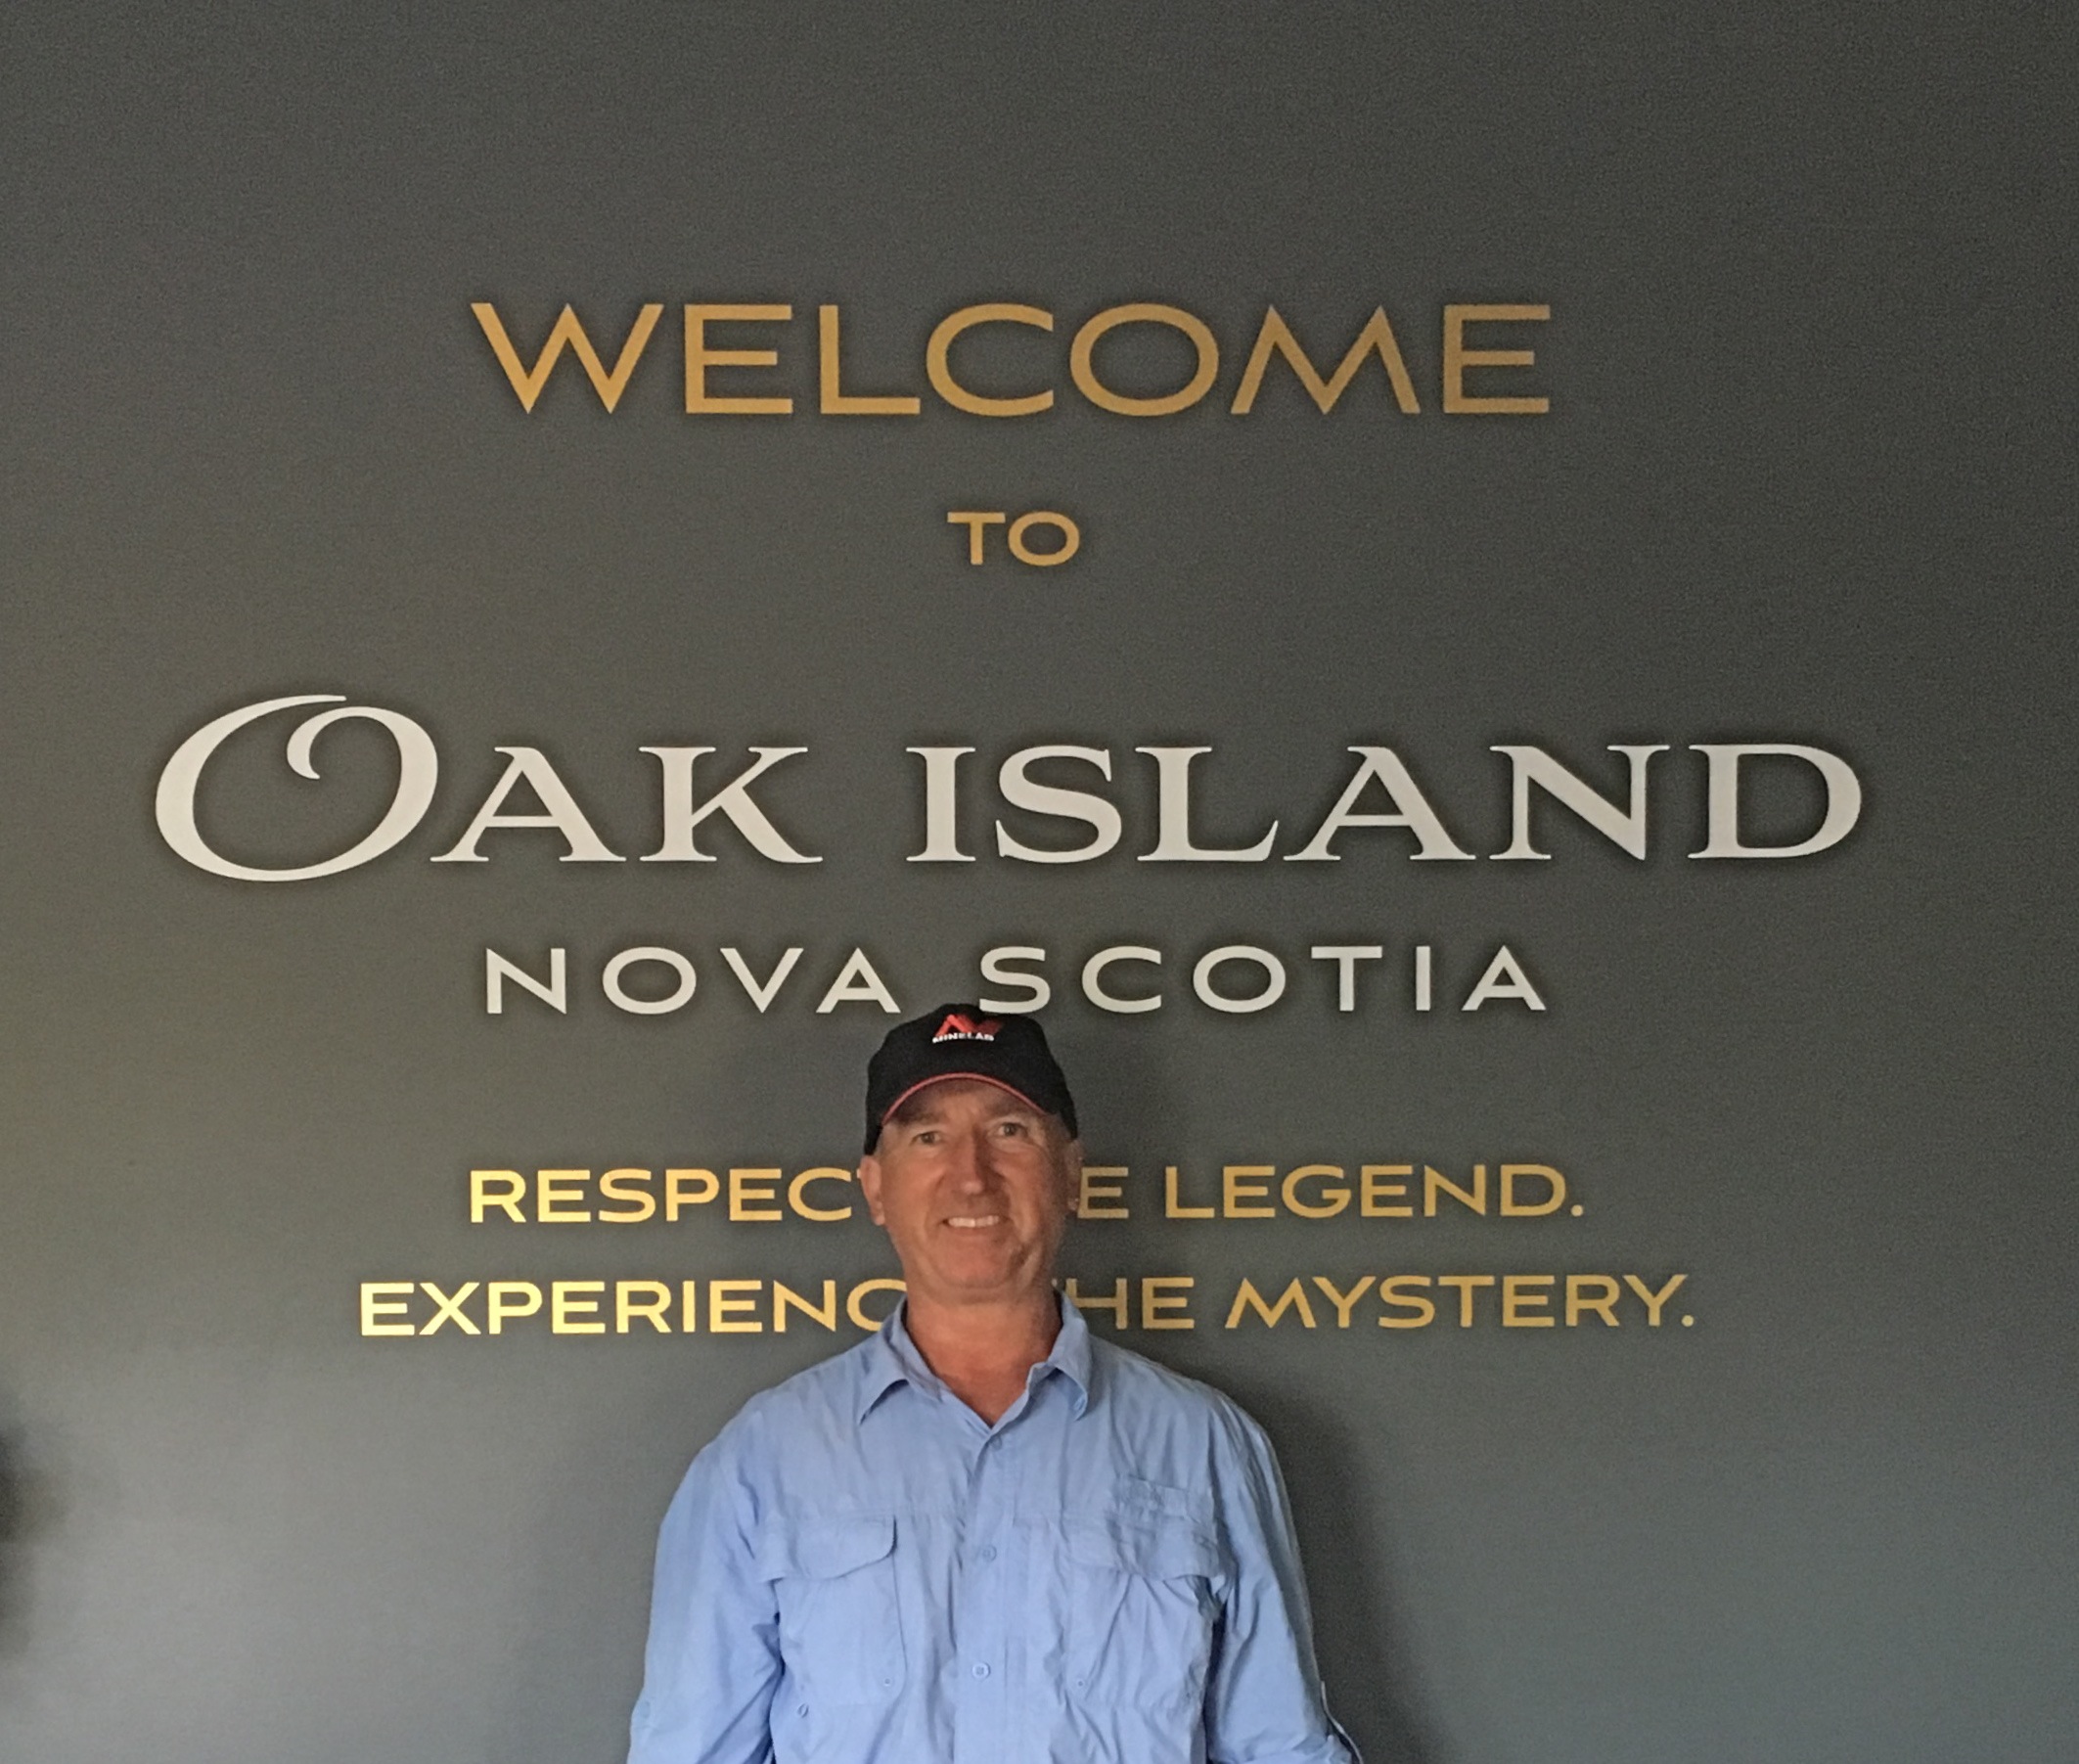 A return to Oak Island